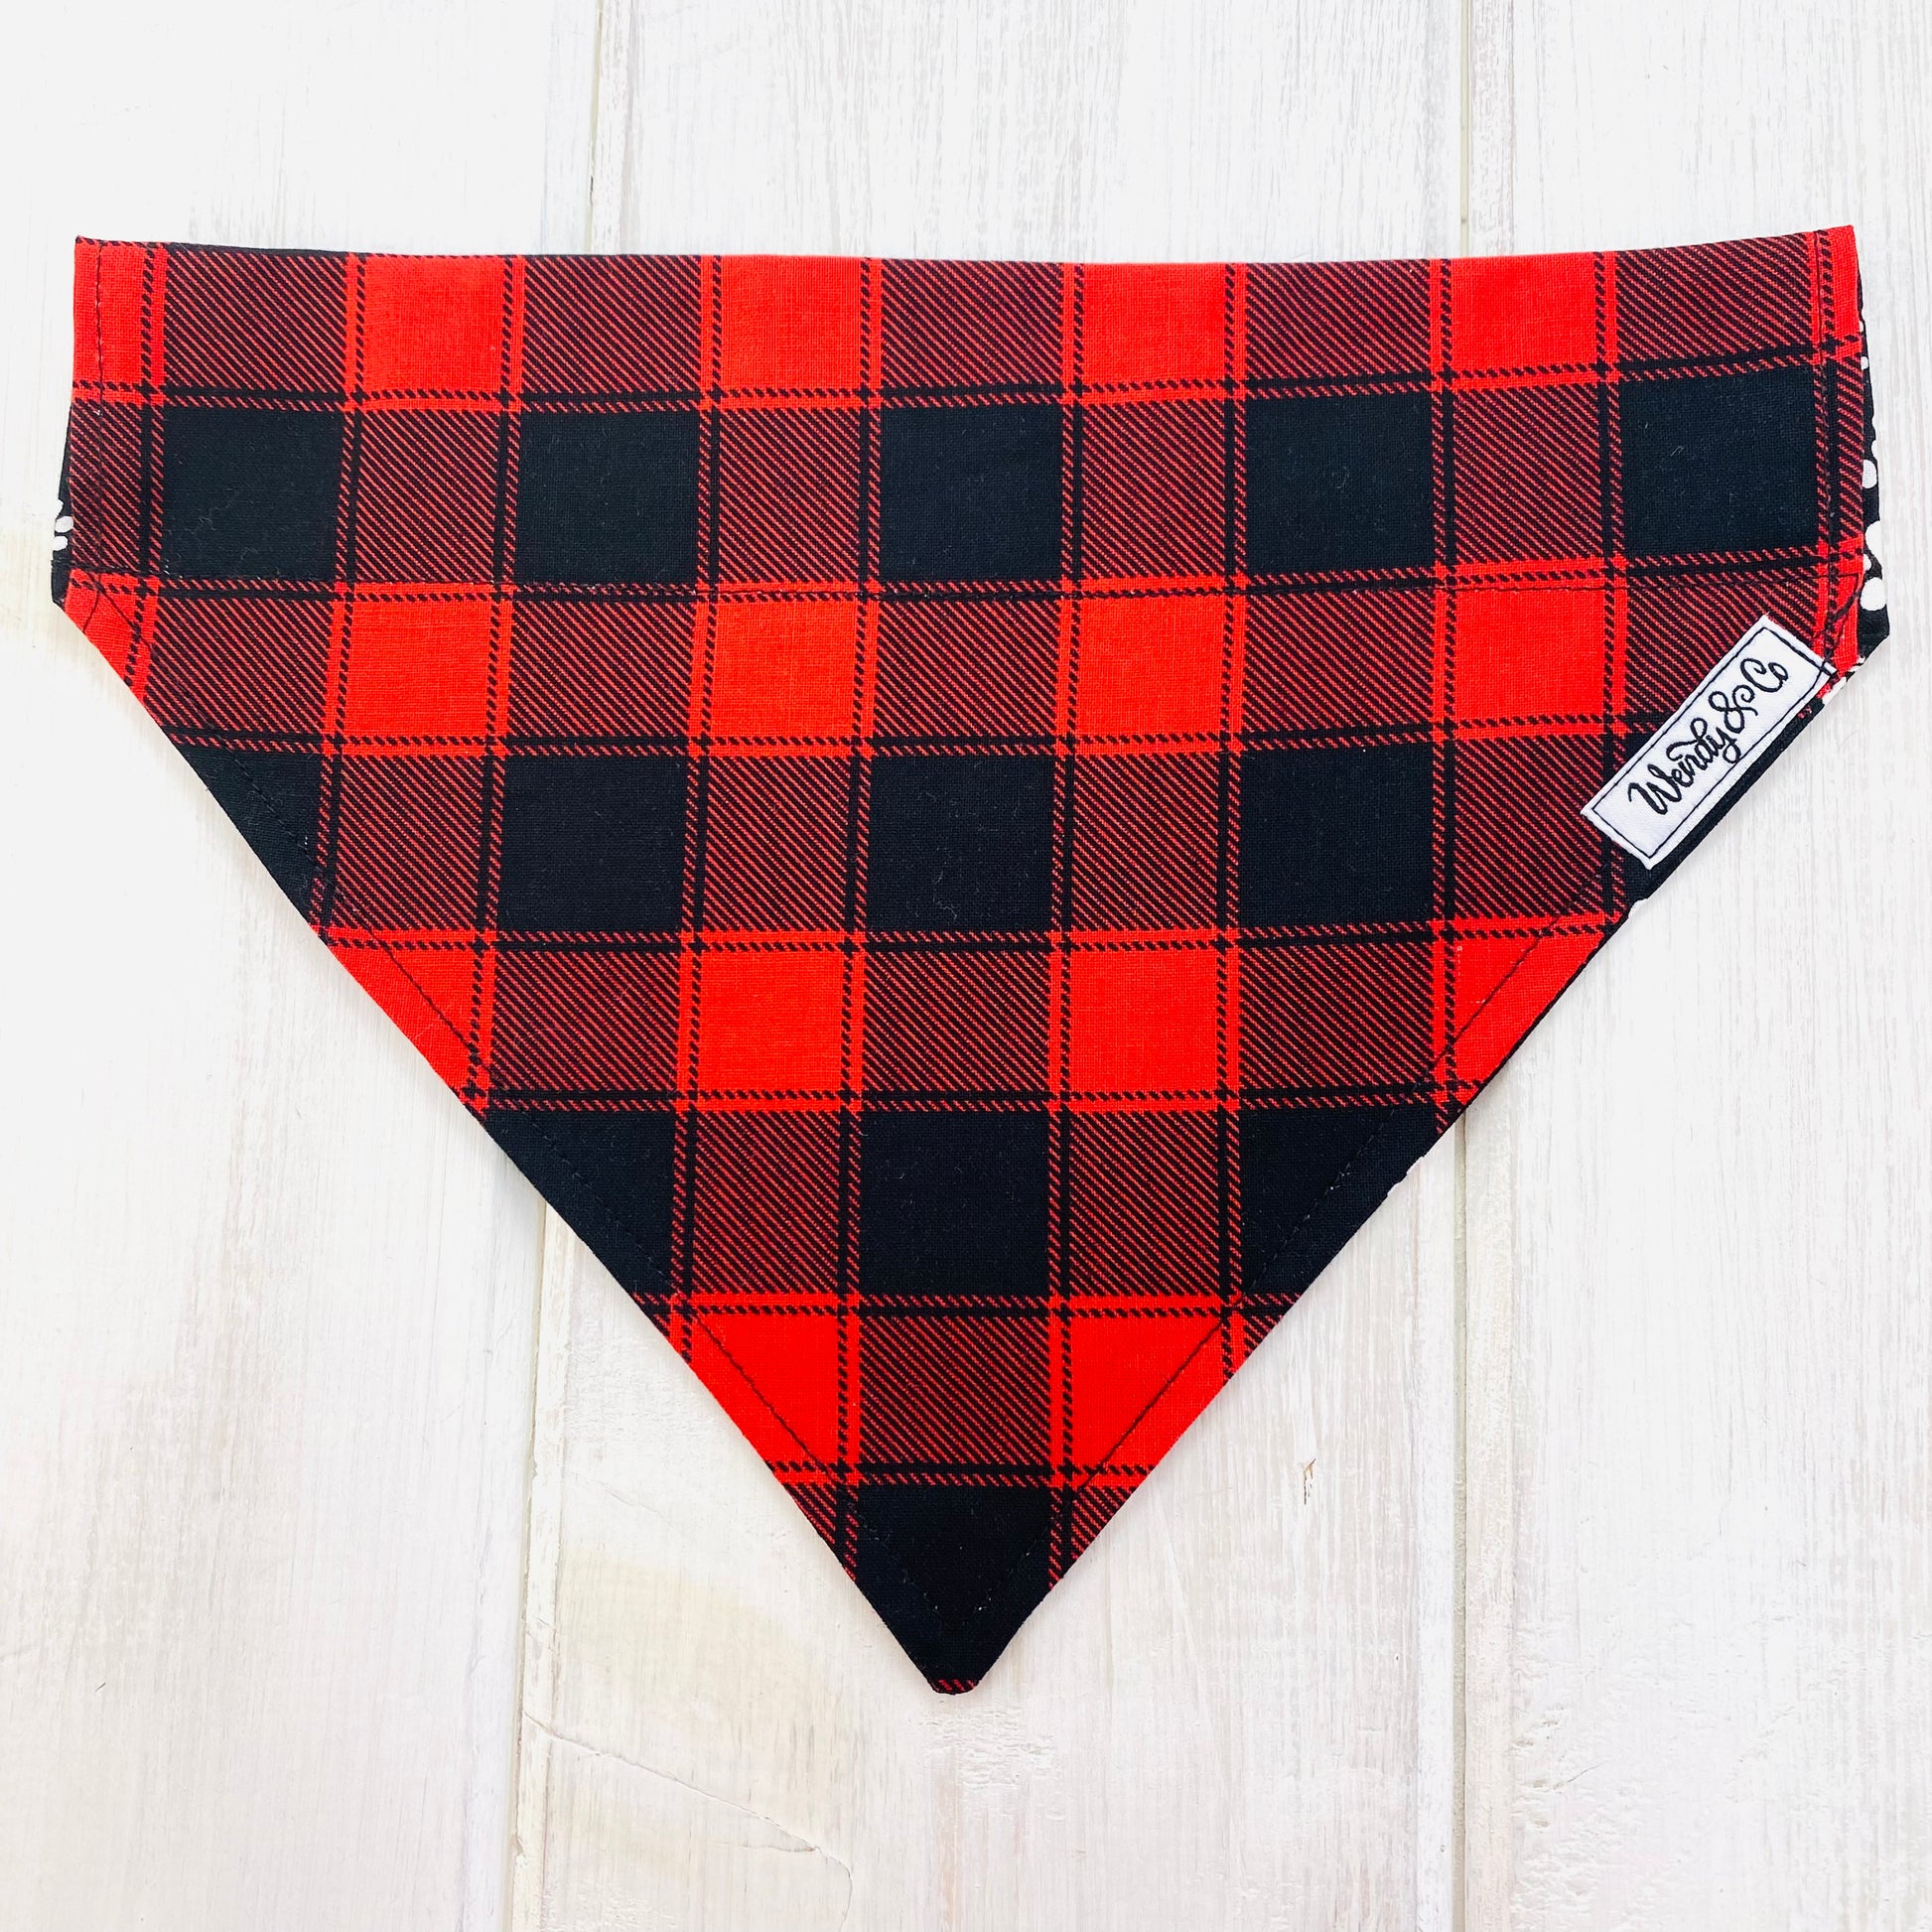 Buffalo plaid red and back over-the-collar dog bandana.